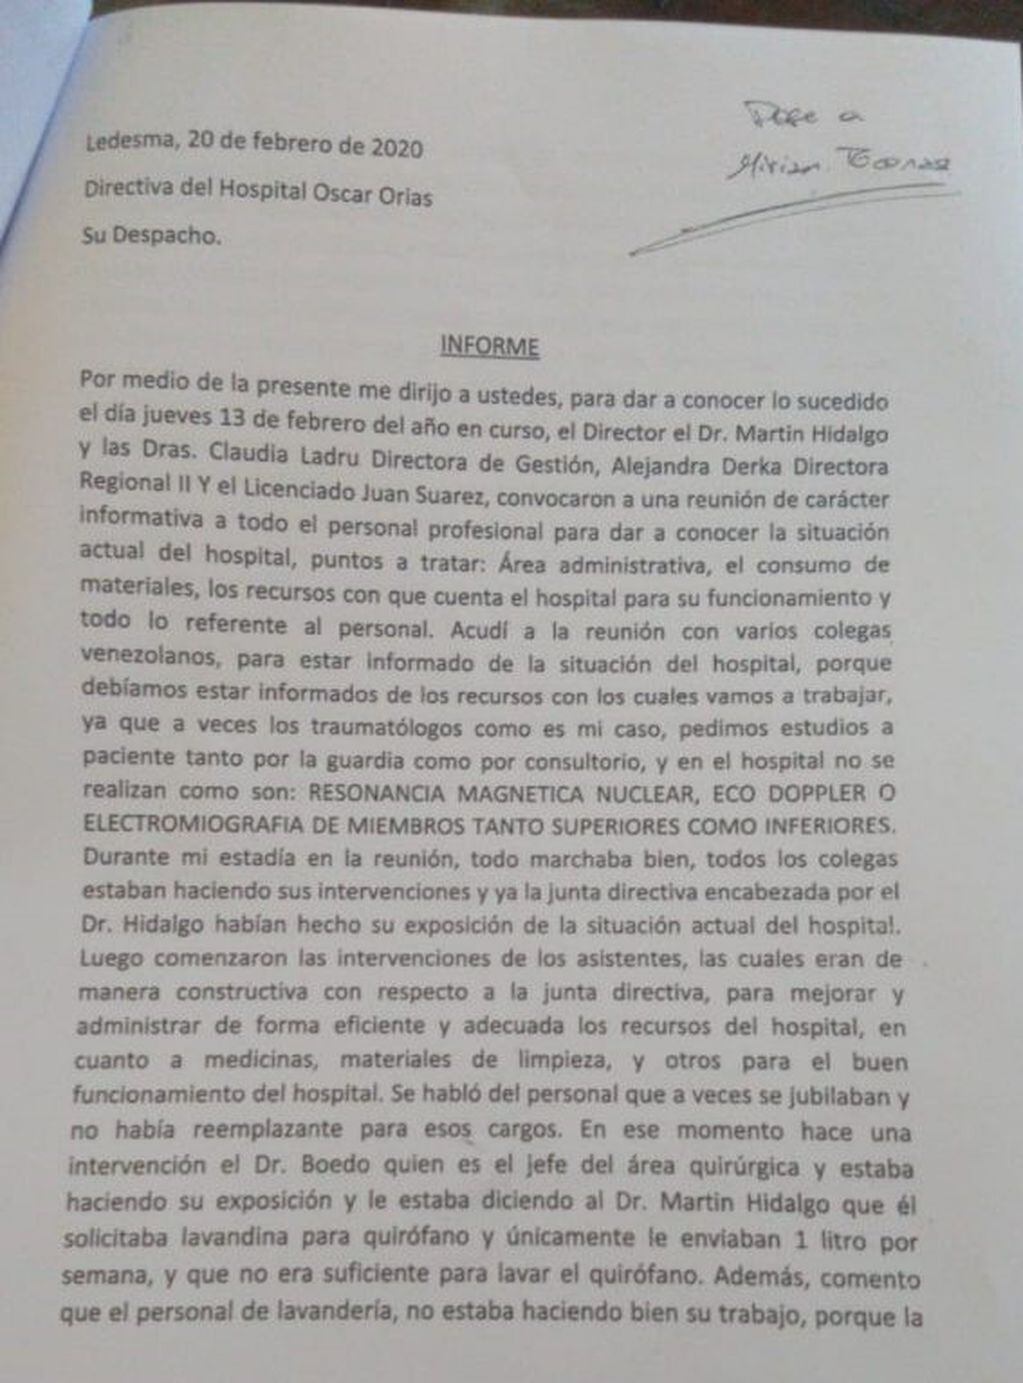 El informe presentado por el médico Euclides López Rojas, referido a lo acontecido en la asamblea del 13 de febrero.